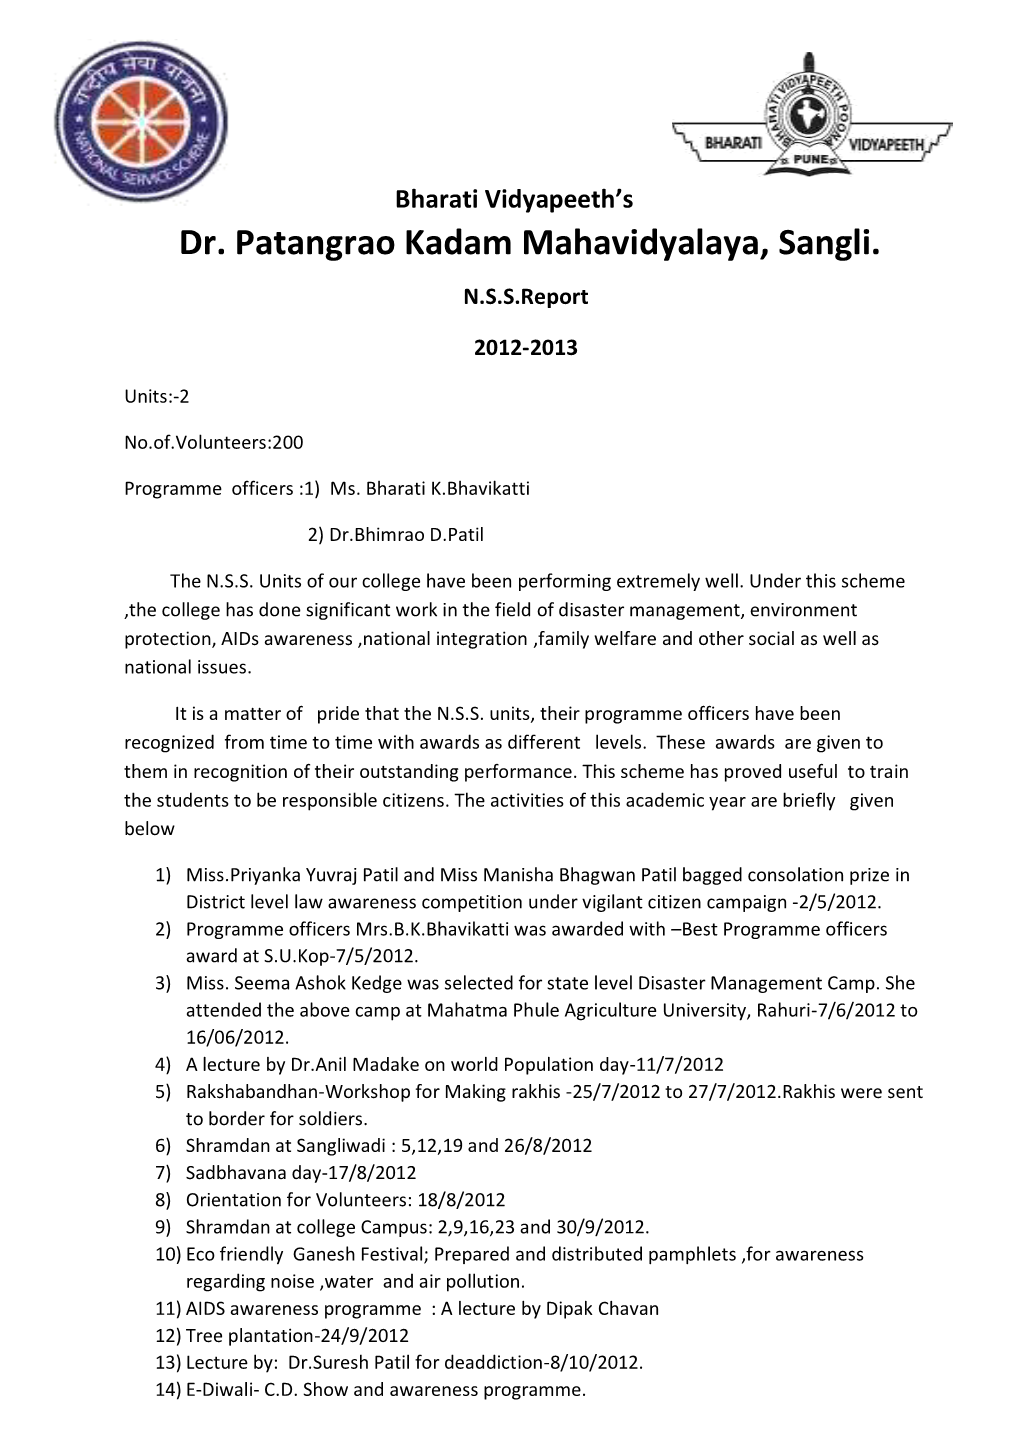 Bharati Vidyapeeth's Dr. Patangrao Kadam Mahavidyalaya, Sangli